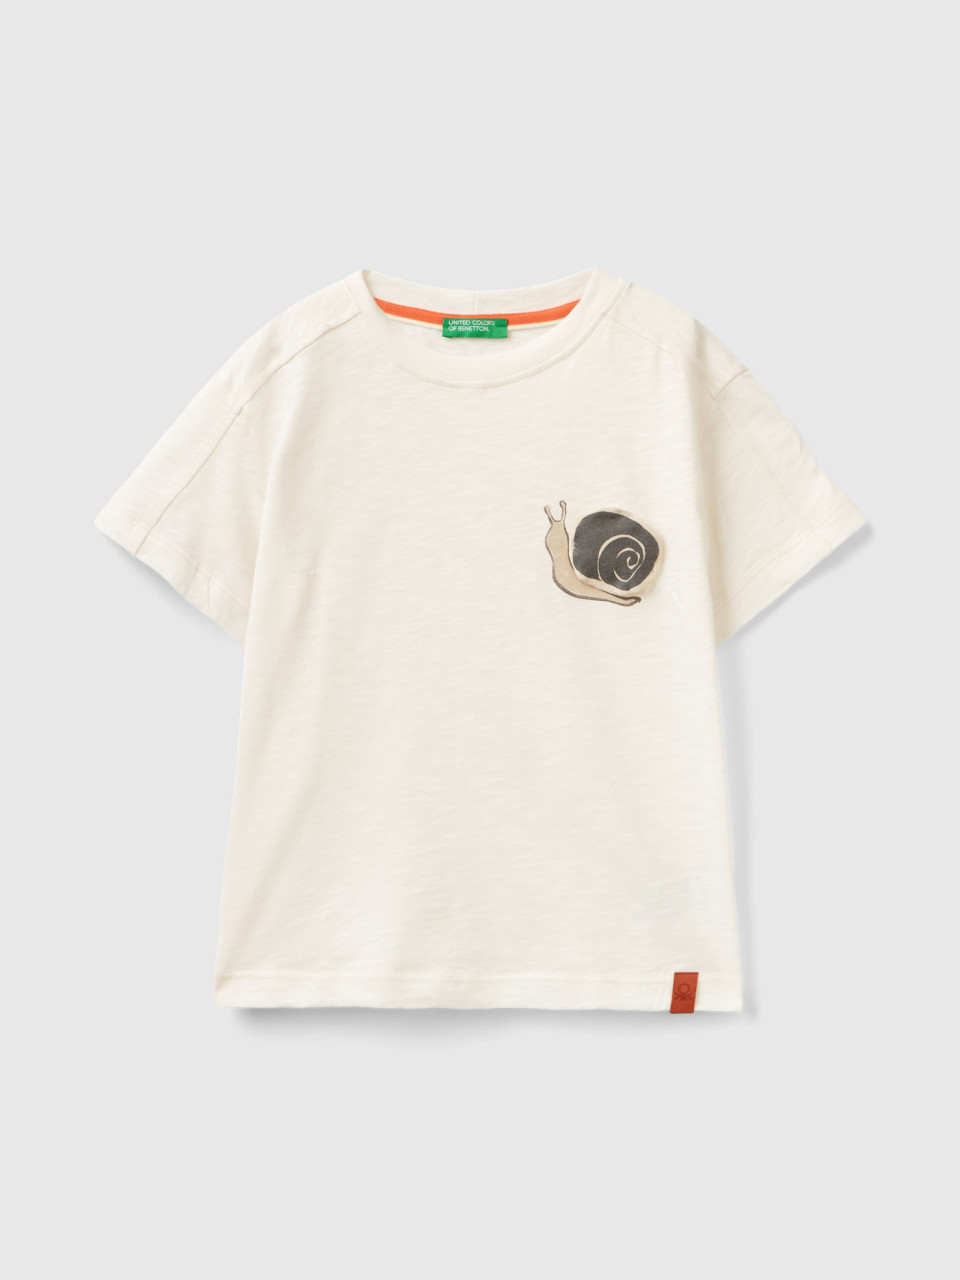 Benetton, Maglietta Con Stampa E Applicazione, Bianco Panna, Bambini